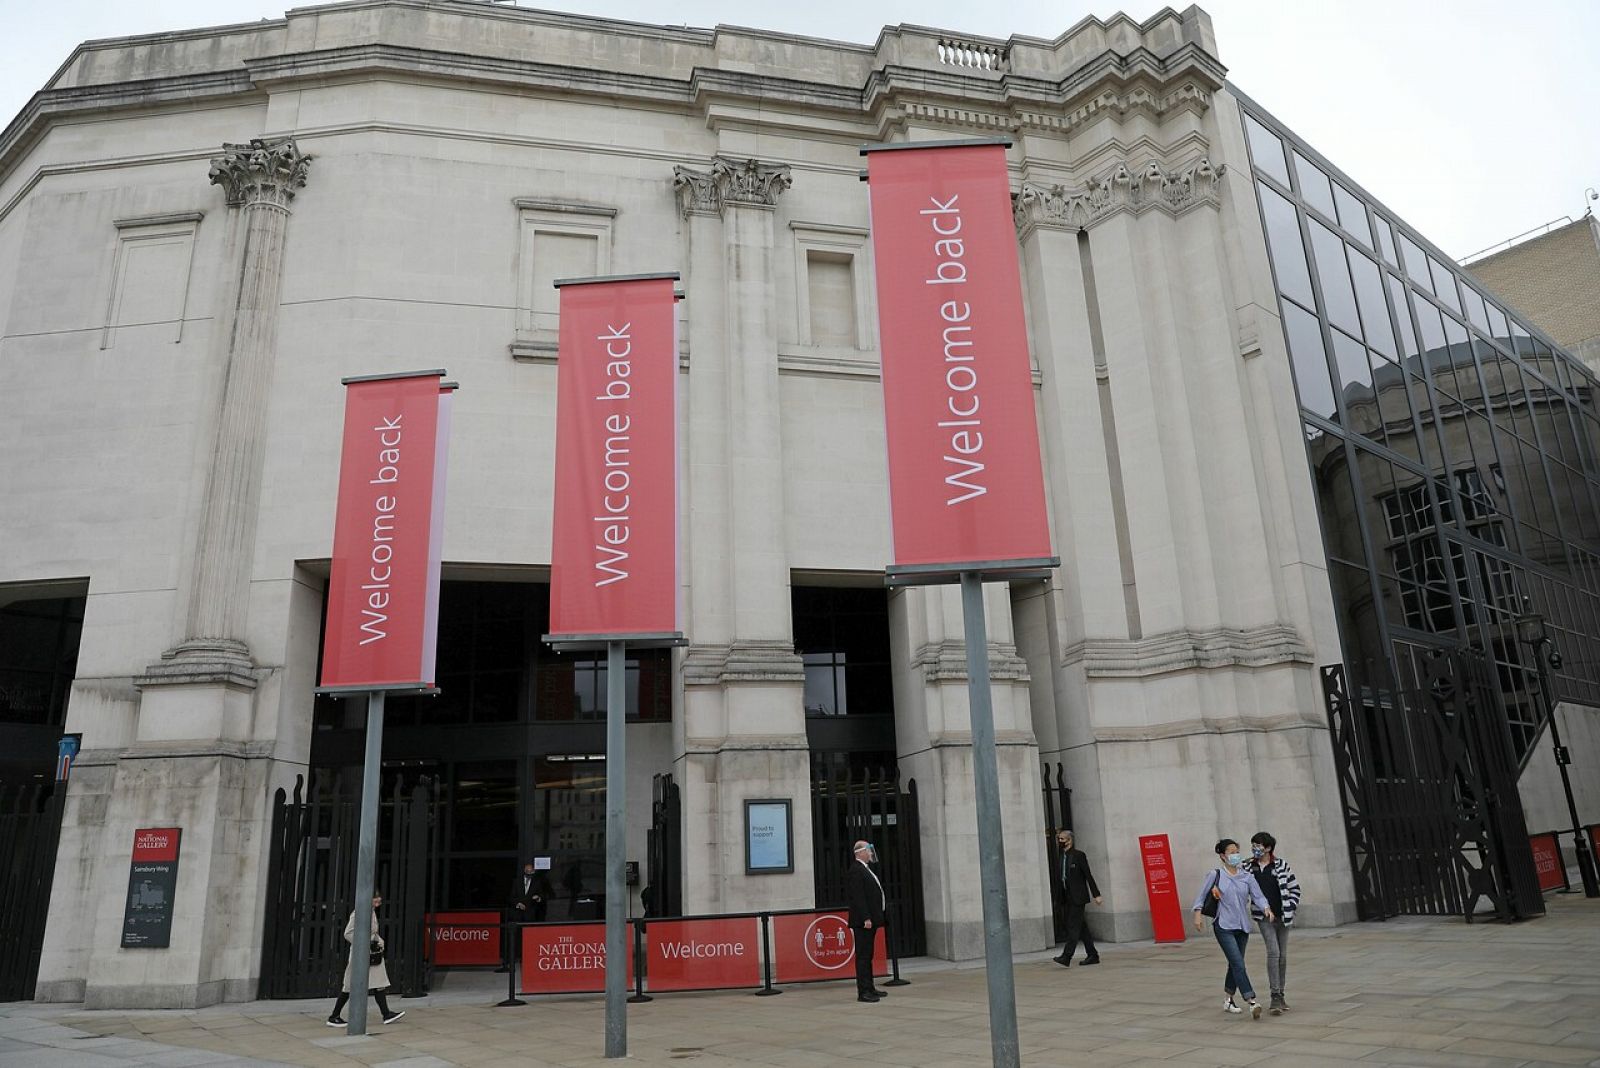 La National Gallery de Londres es el primer museo británico que abre después del cierre por el coronavirus